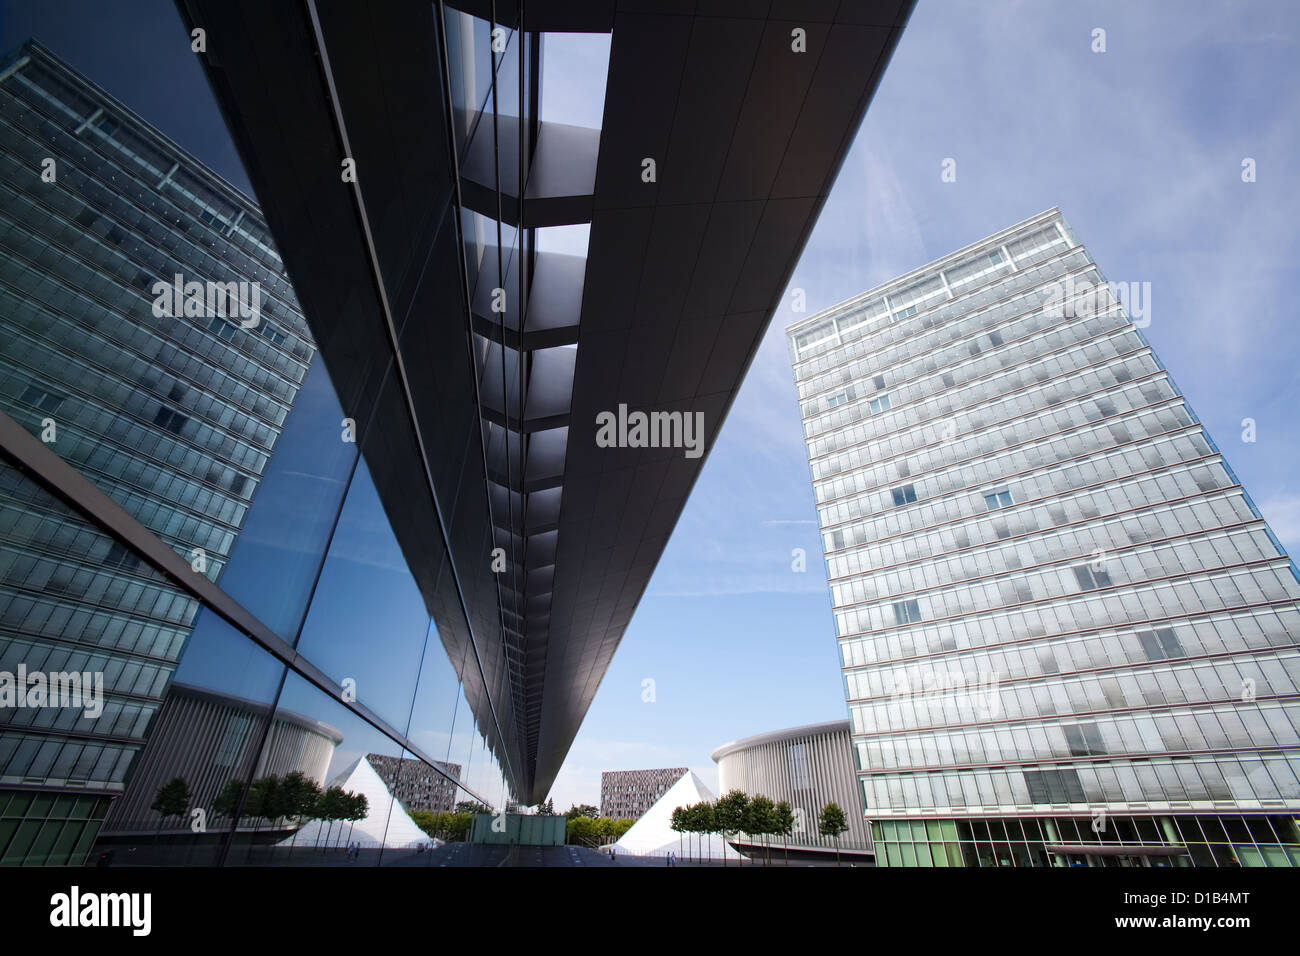 L'architecture moderne, les reflets dans les fenêtres du Centre des Congrès, Place de l'Europe, Kirchberg, Luxembourg, Europe Banque D'Images